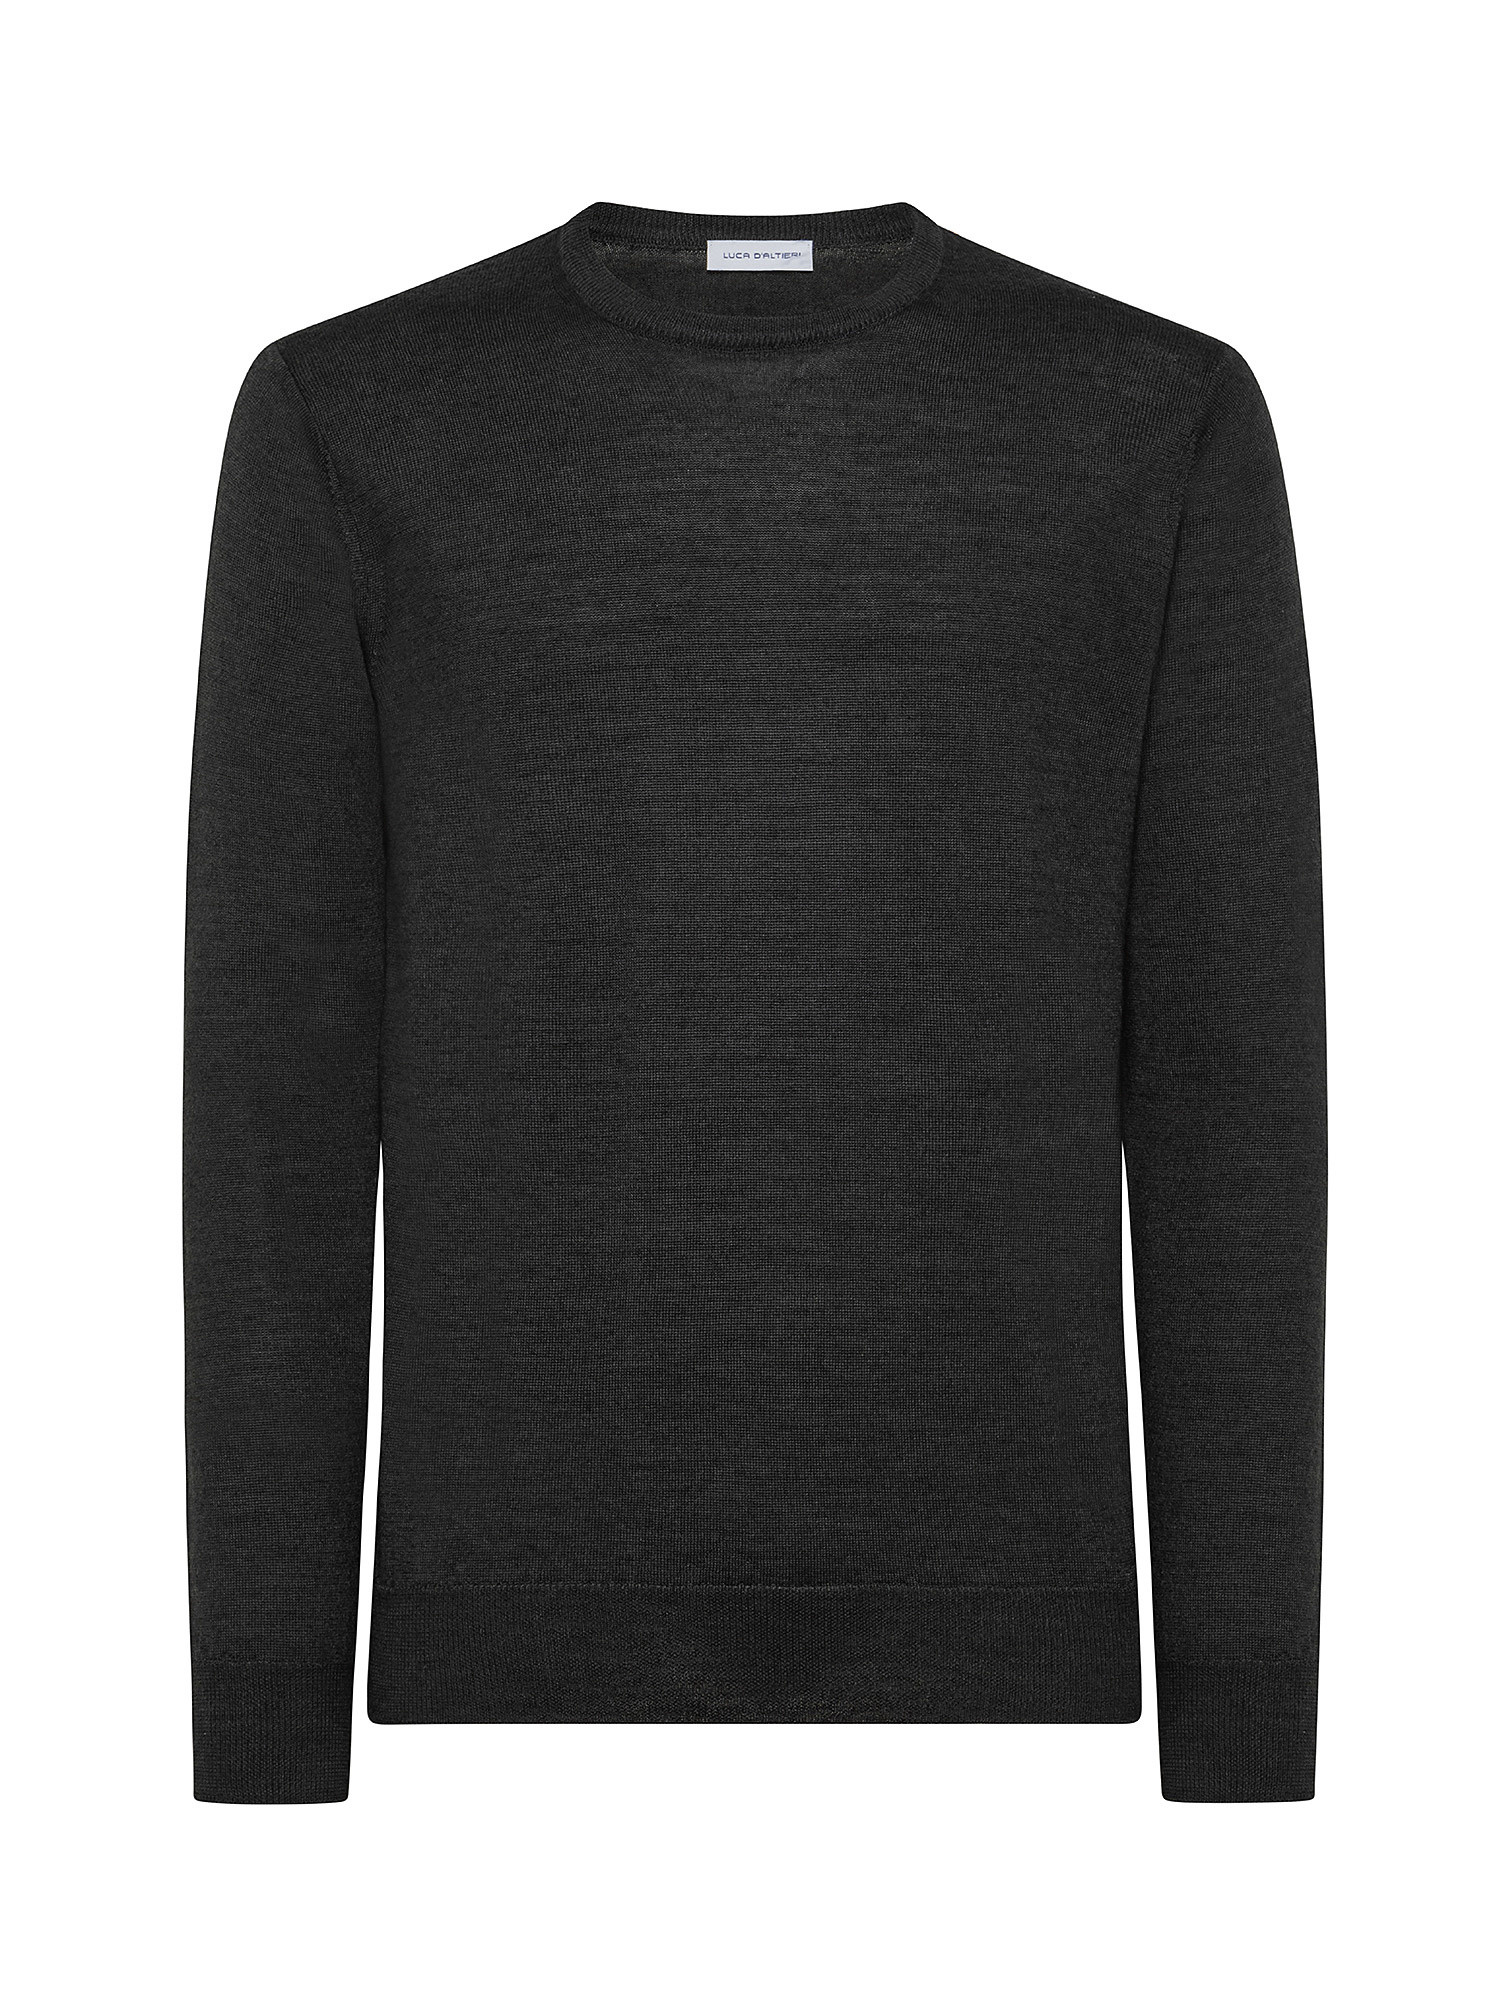 Merino Blend crewneck sweater - Machine washable, Black, large image number 0